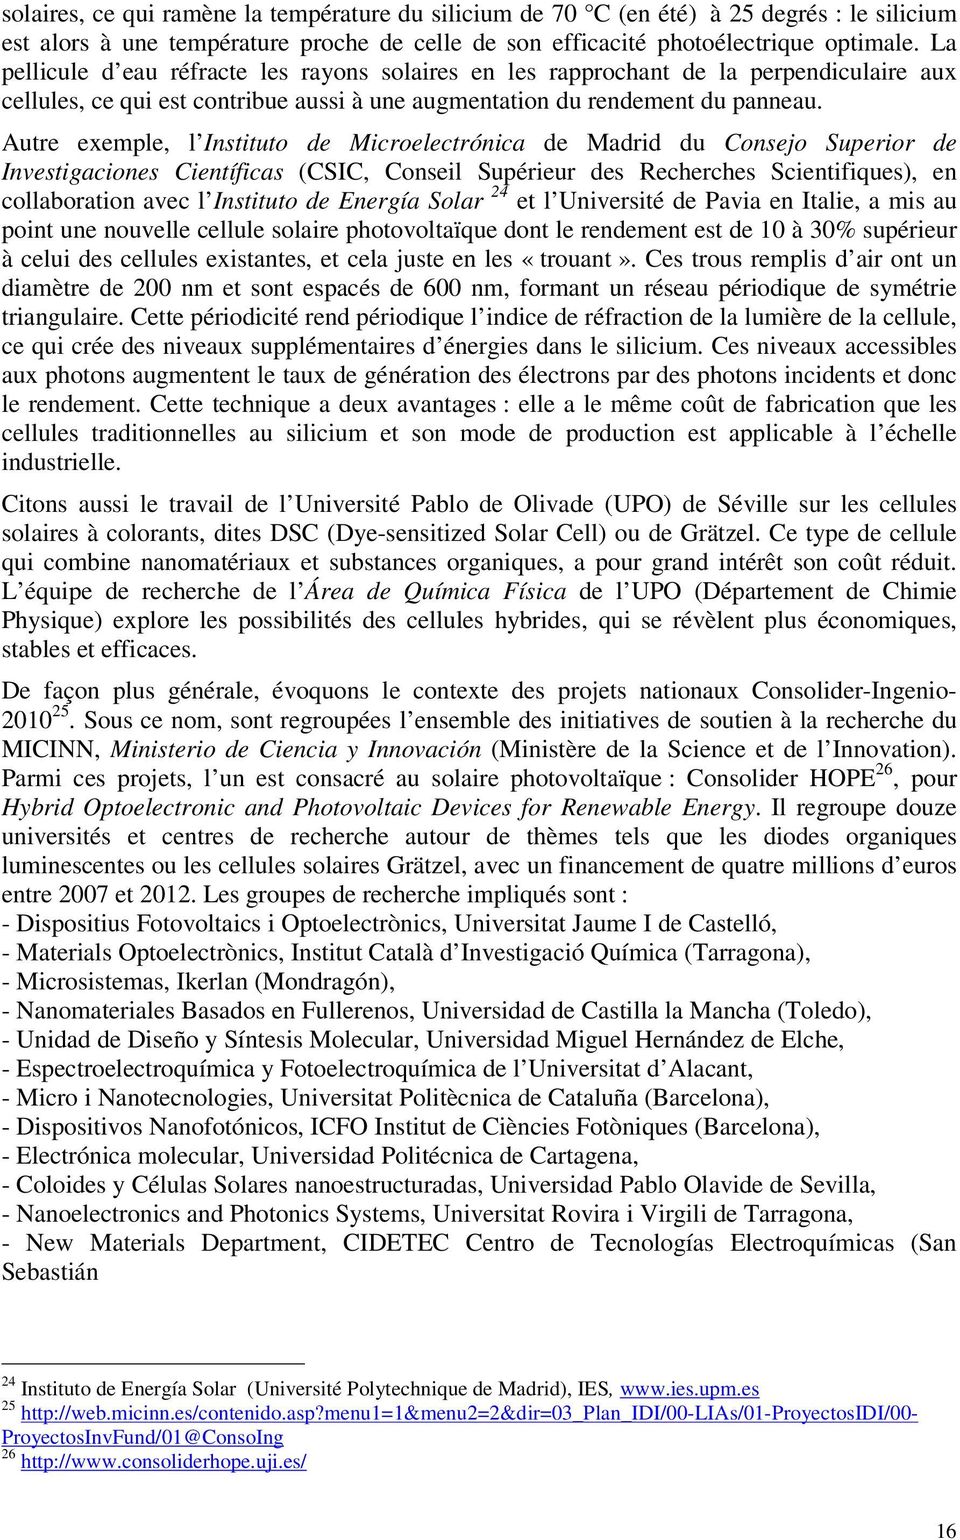 Autre exemple, l Instituto de Microelectrónica de Madrid du Consejo Superior de Investigaciones Científicas (CSIC, Conseil Supérieur des Recherches Scientifiques), en collaboration avec l Instituto